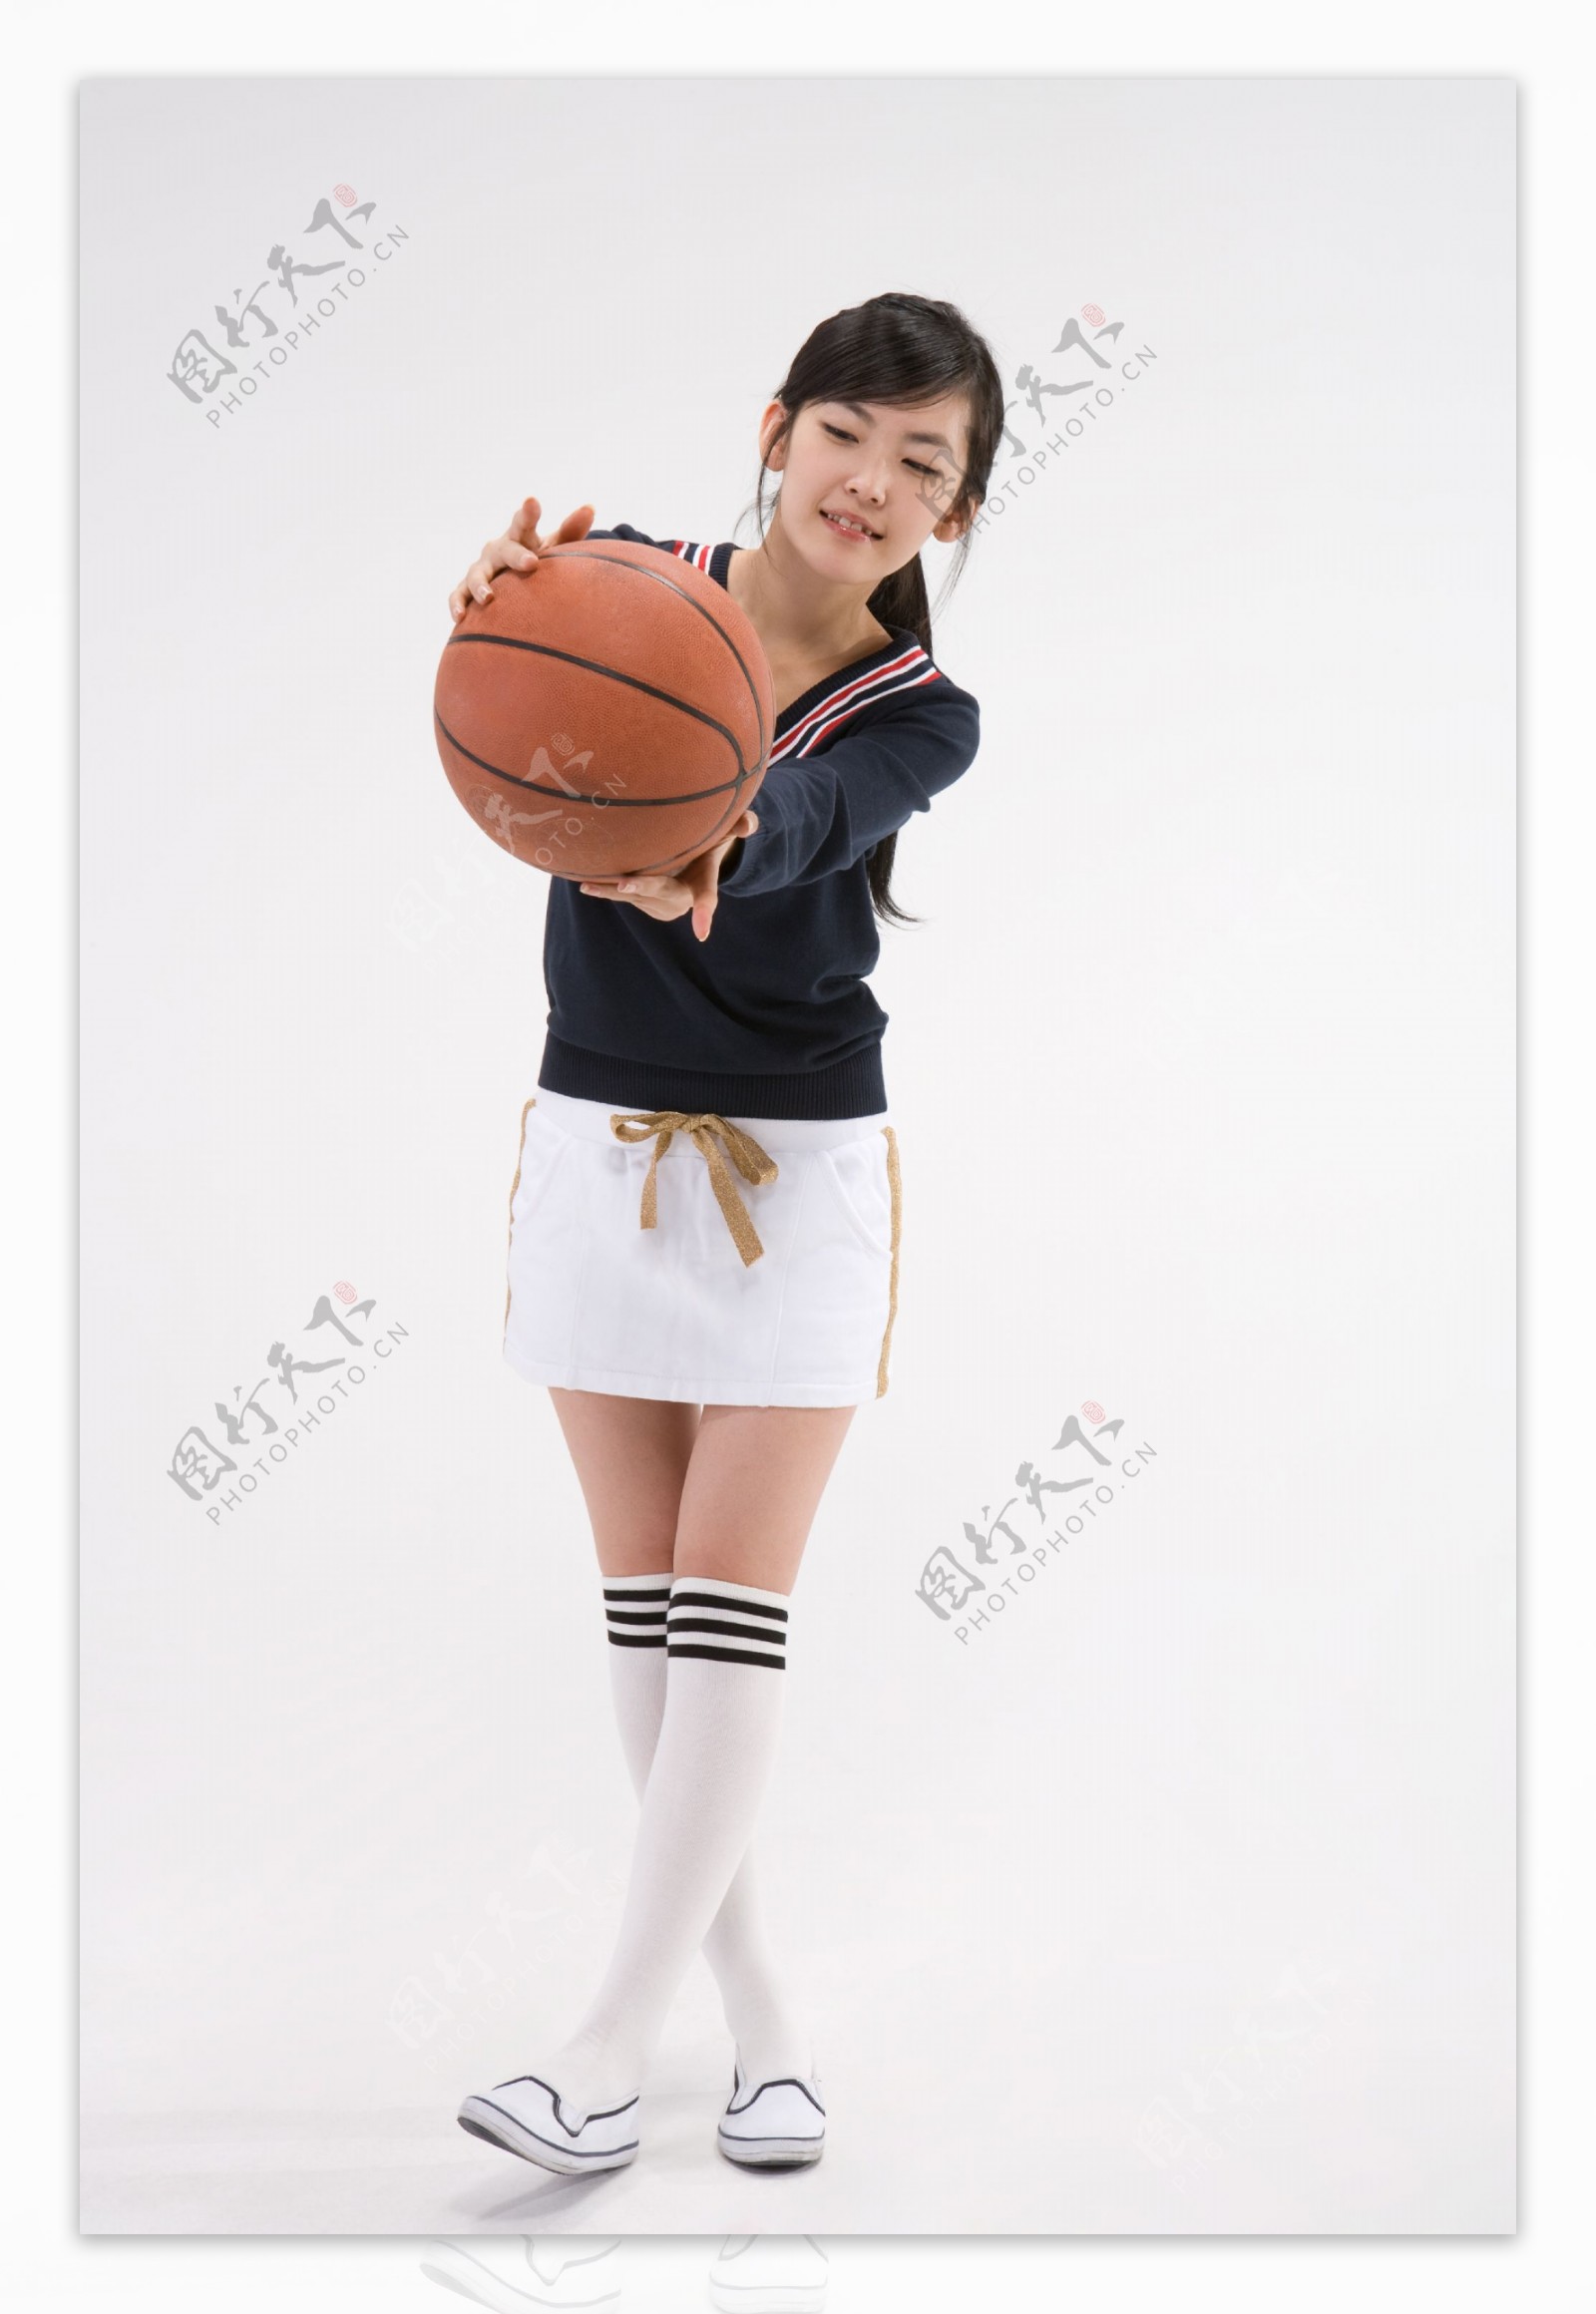 打篮球漂亮学生图片